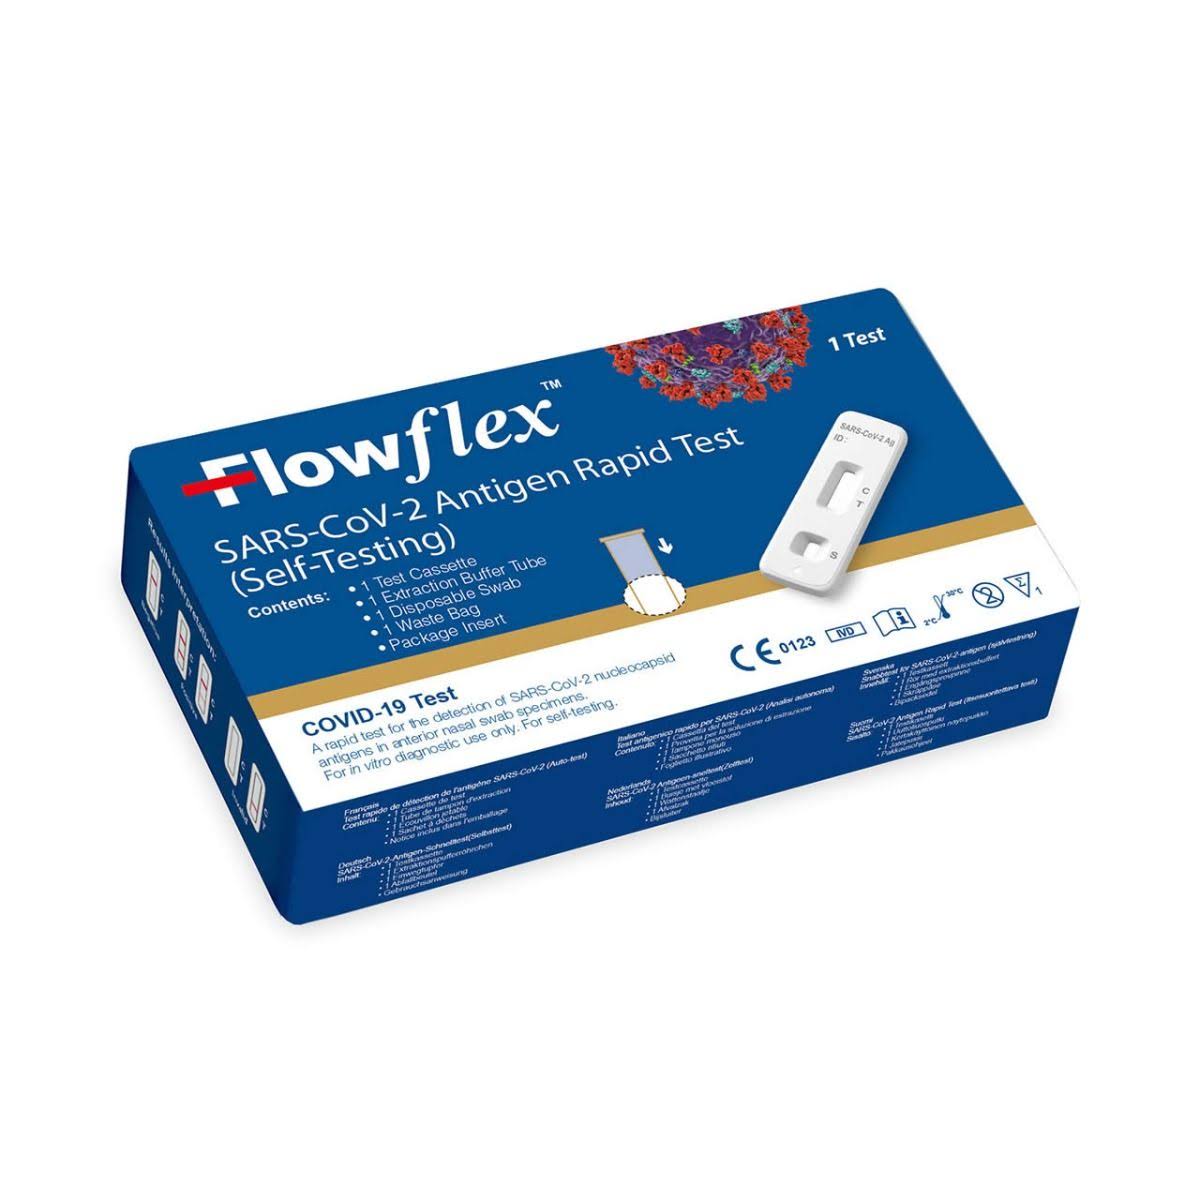 Flowflex Covid-19 Antigen Rapid Test (Nasal Swab) Self-Test